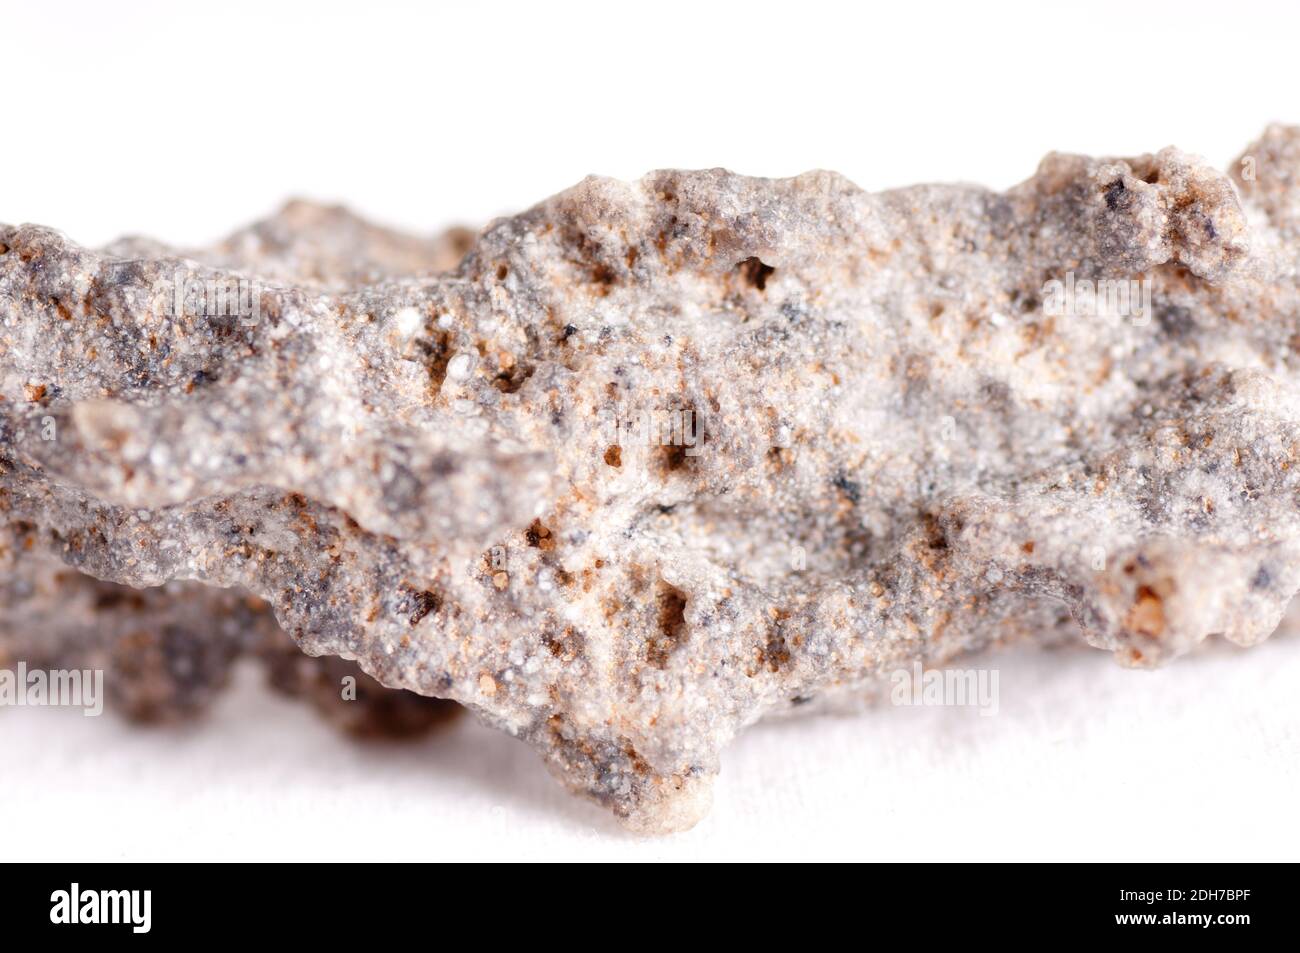 https://c8.alamy.com/compes/2dh7bpf/mineral-fulgurite-formadas-a-partir-de-materiales-fundidos-relampago-2dh7bpf.jpg